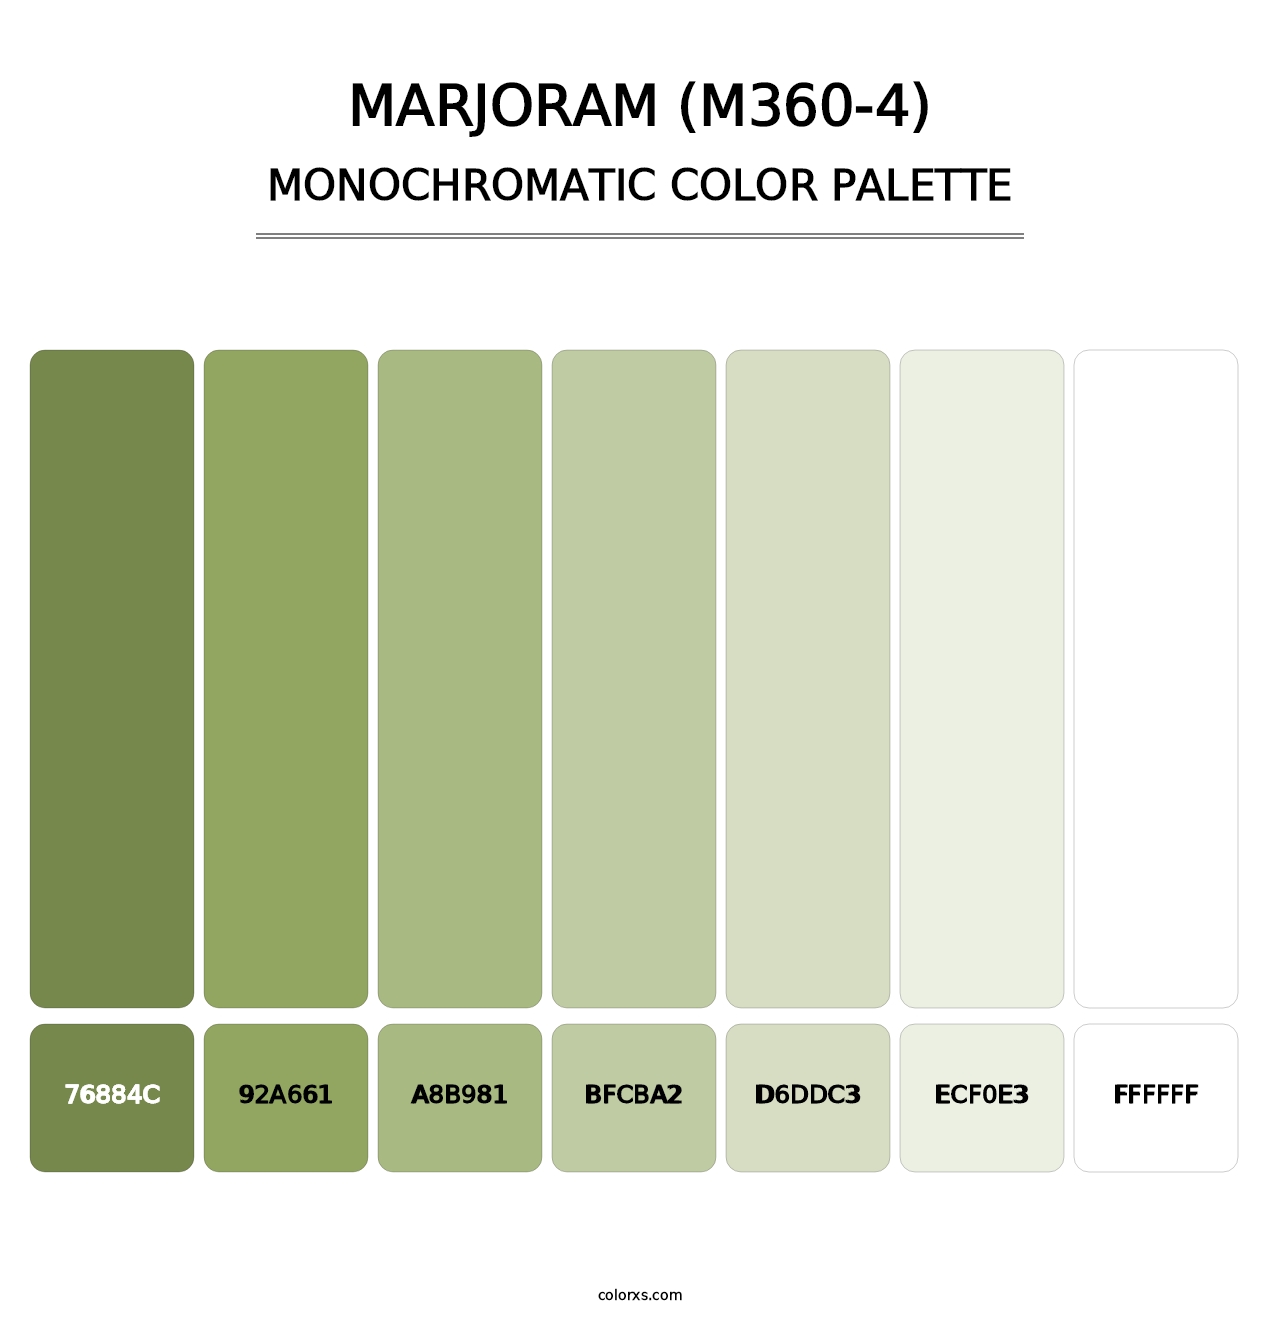 Marjoram (M360-4) - Monochromatic Color Palette